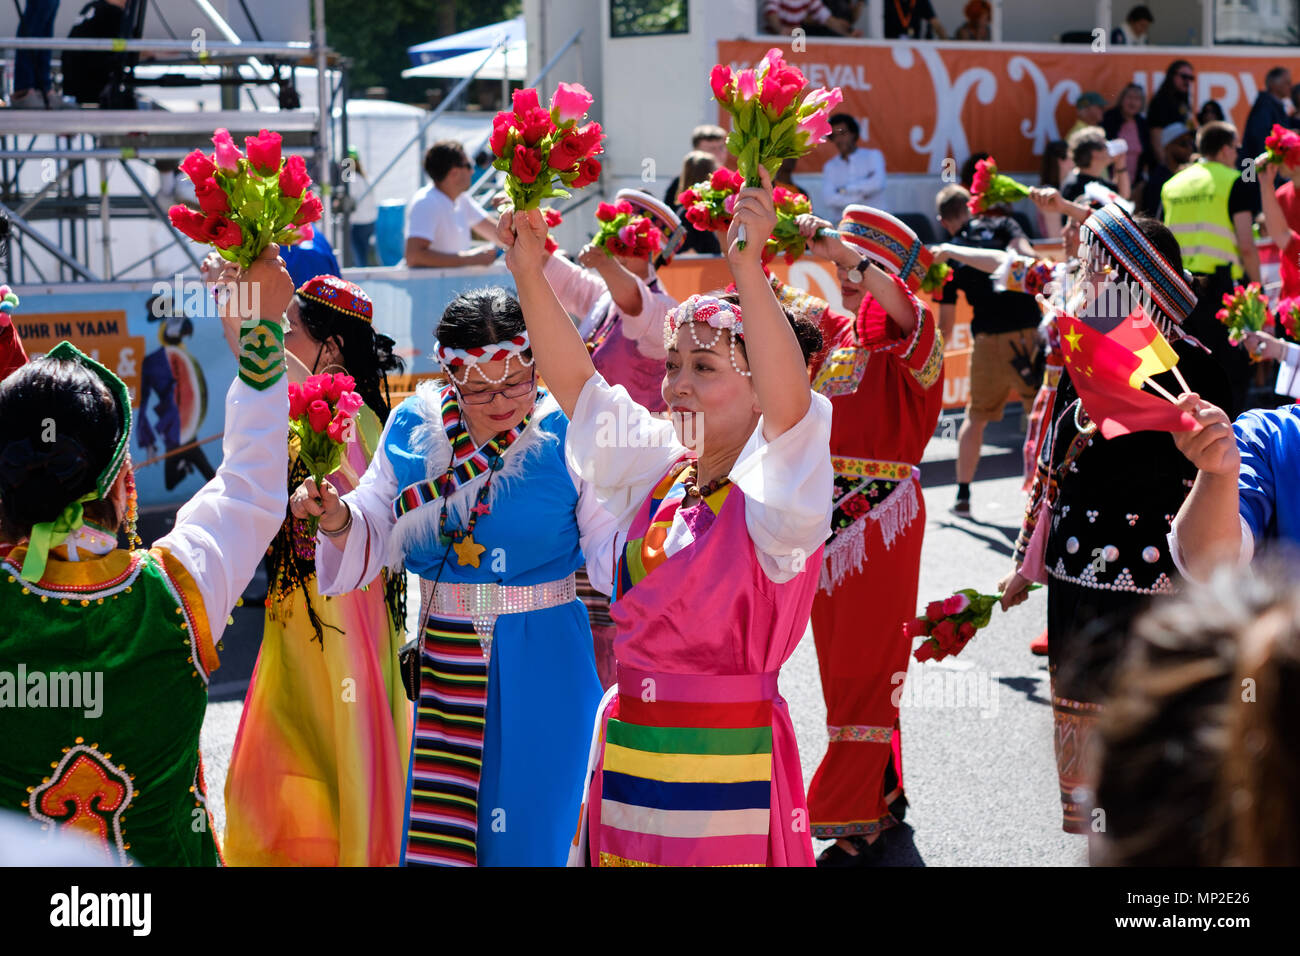 Berlin, Alemania - 20 de mayo: la gente celebrándolo Karneval der Kulturen (Carnaval de las culturas) en Berlín, Alemania Foto de stock